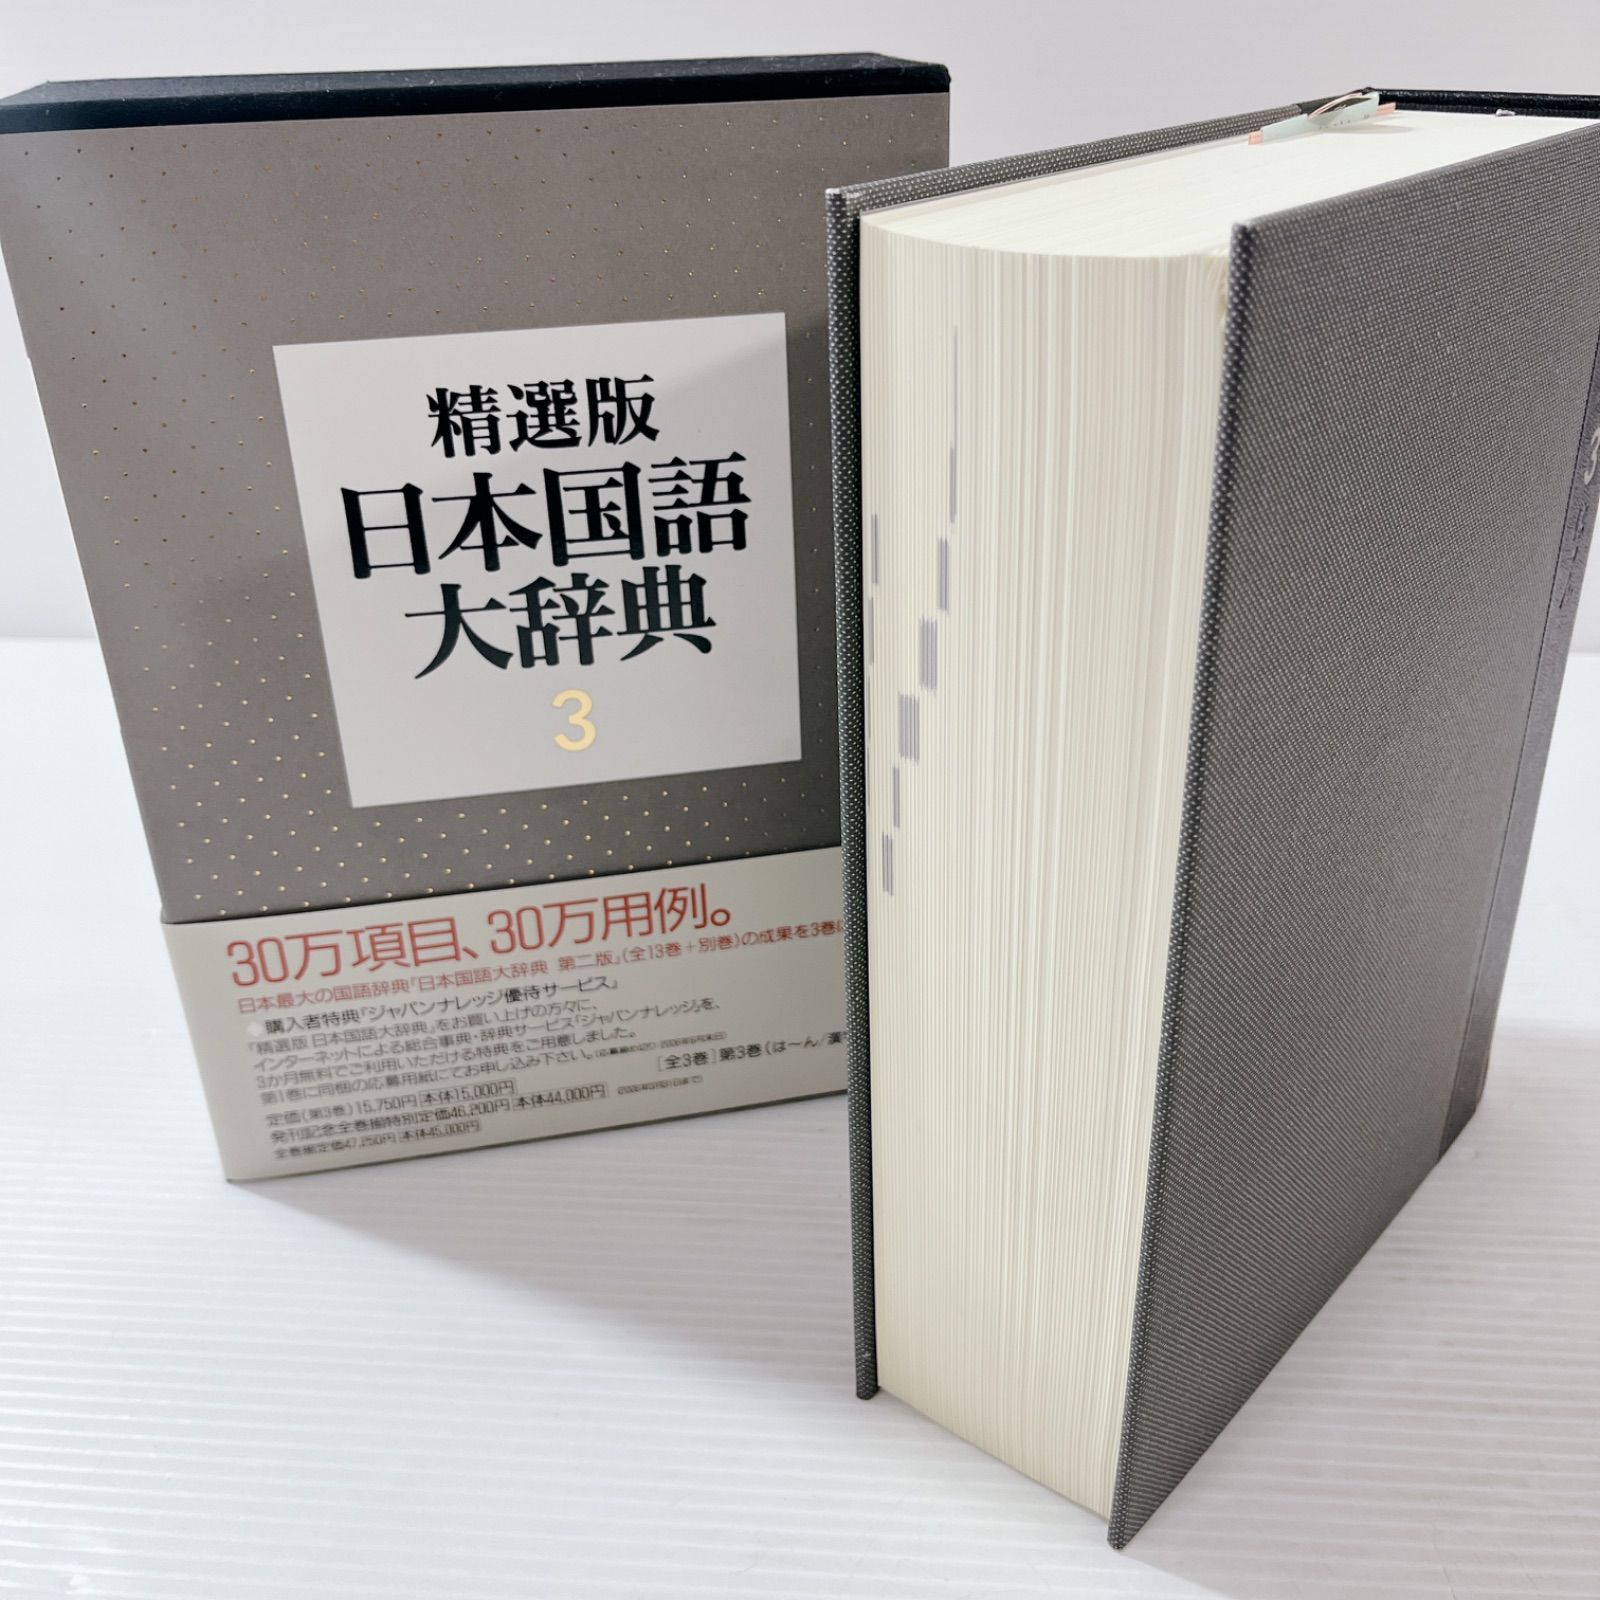 精選版 日本国語大辞典 (第3巻) - 学習参考書